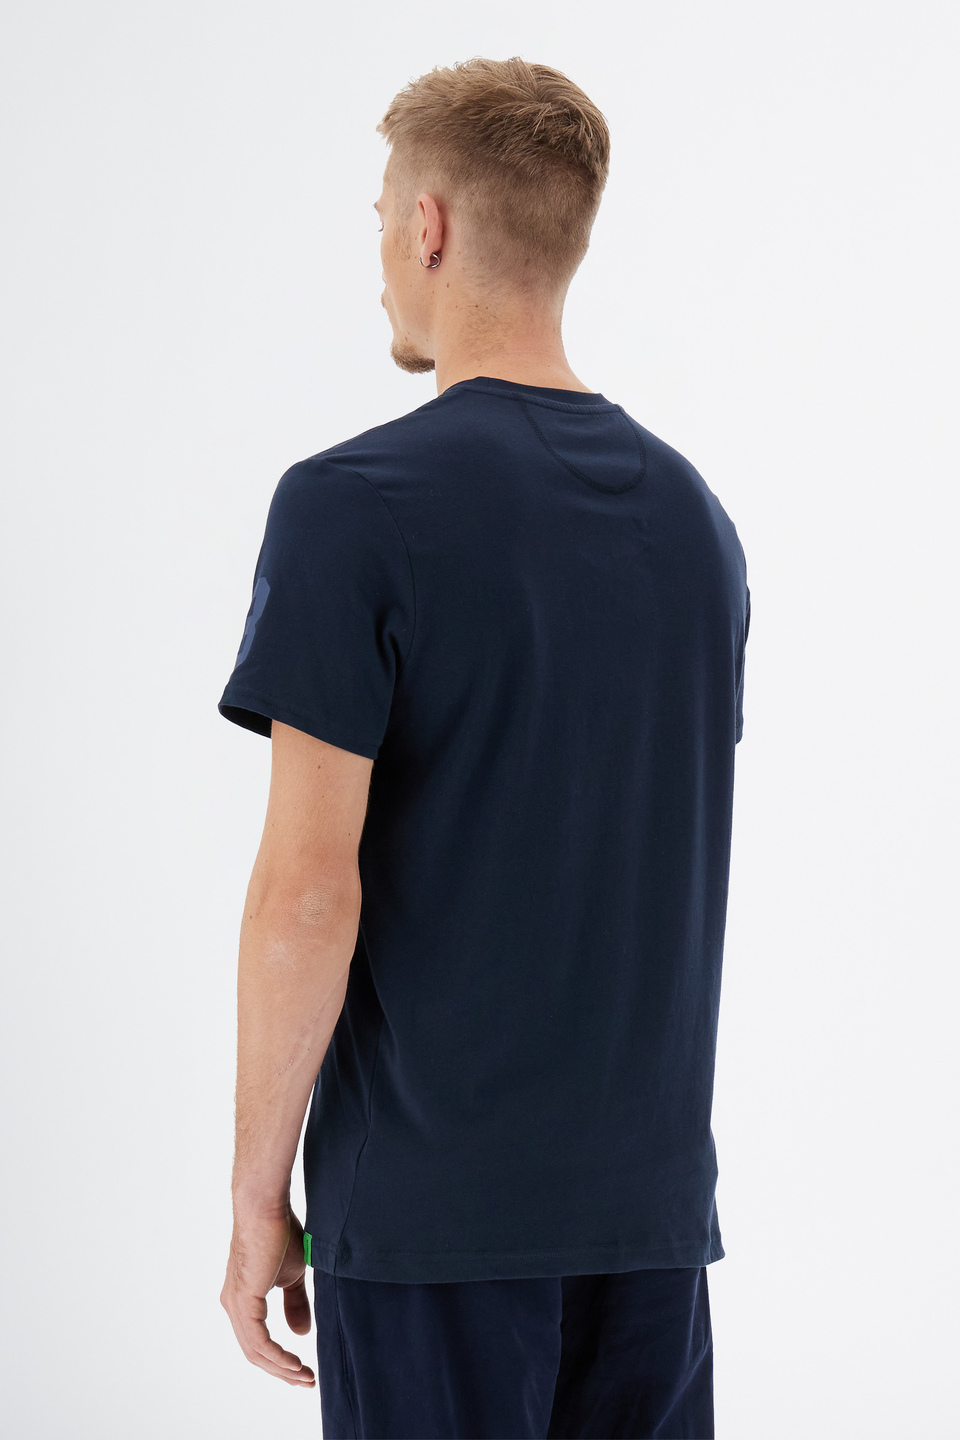 T-shirt col ras du cou à manches courtes pour hommes en coton 100 % coupe classique | La Martina - Official Online Shop